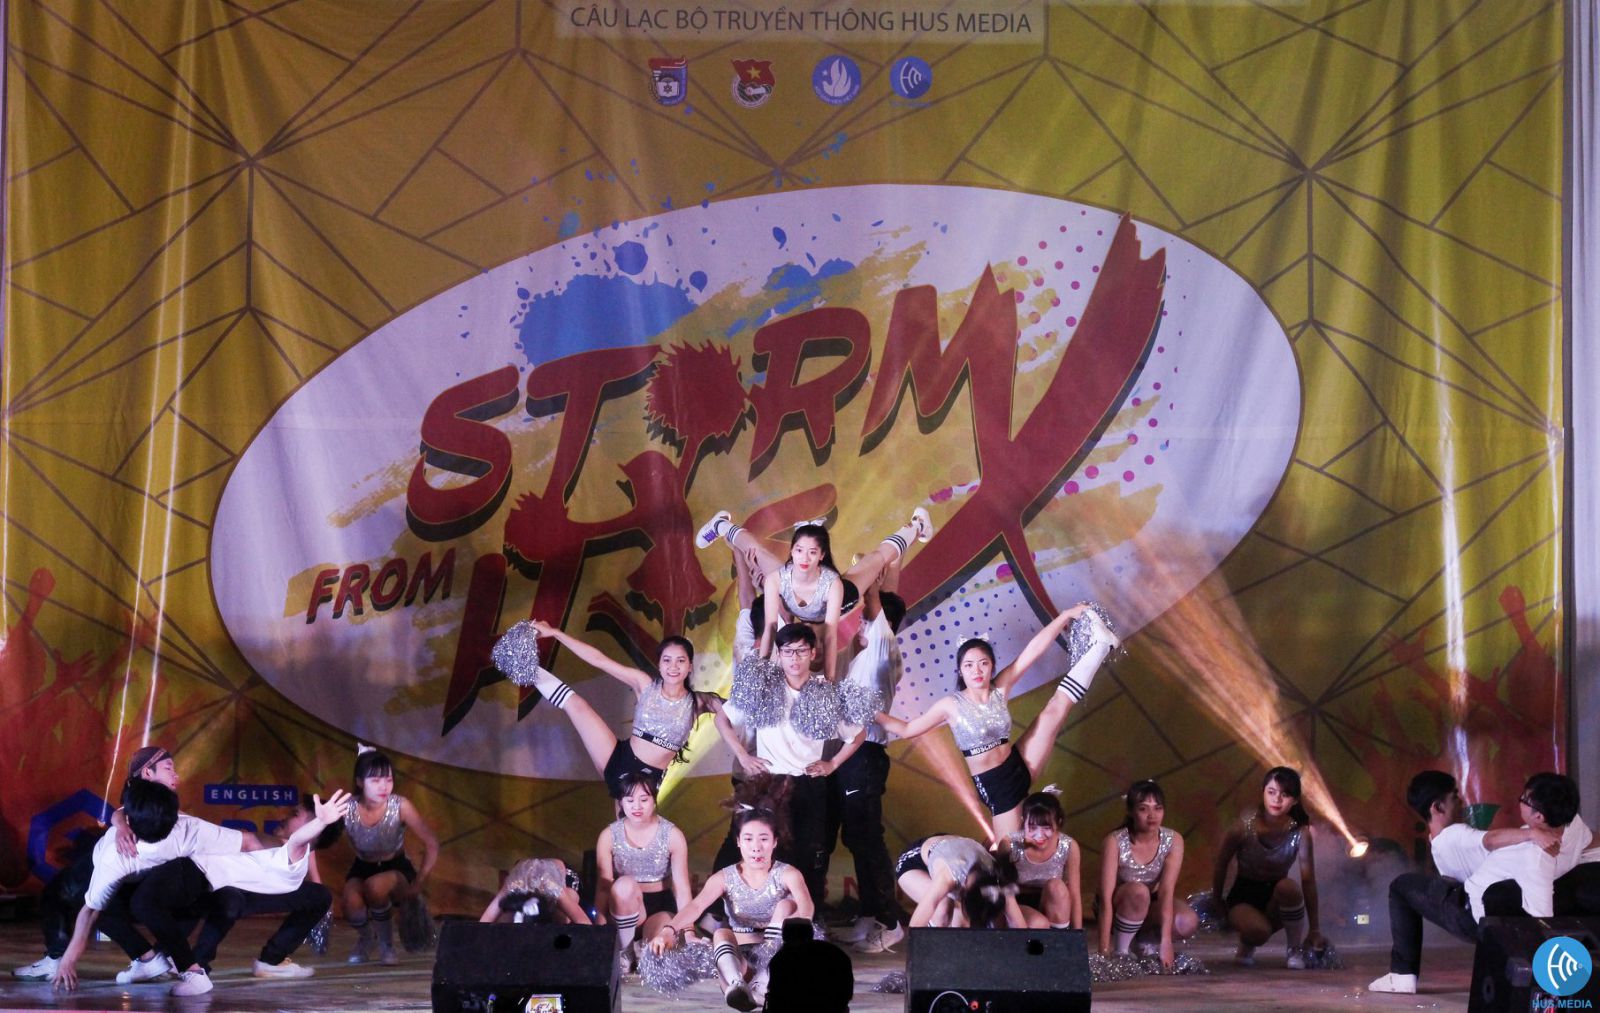 Đại tiệc  aerobic sinh viên: Storm from HUS 2018 